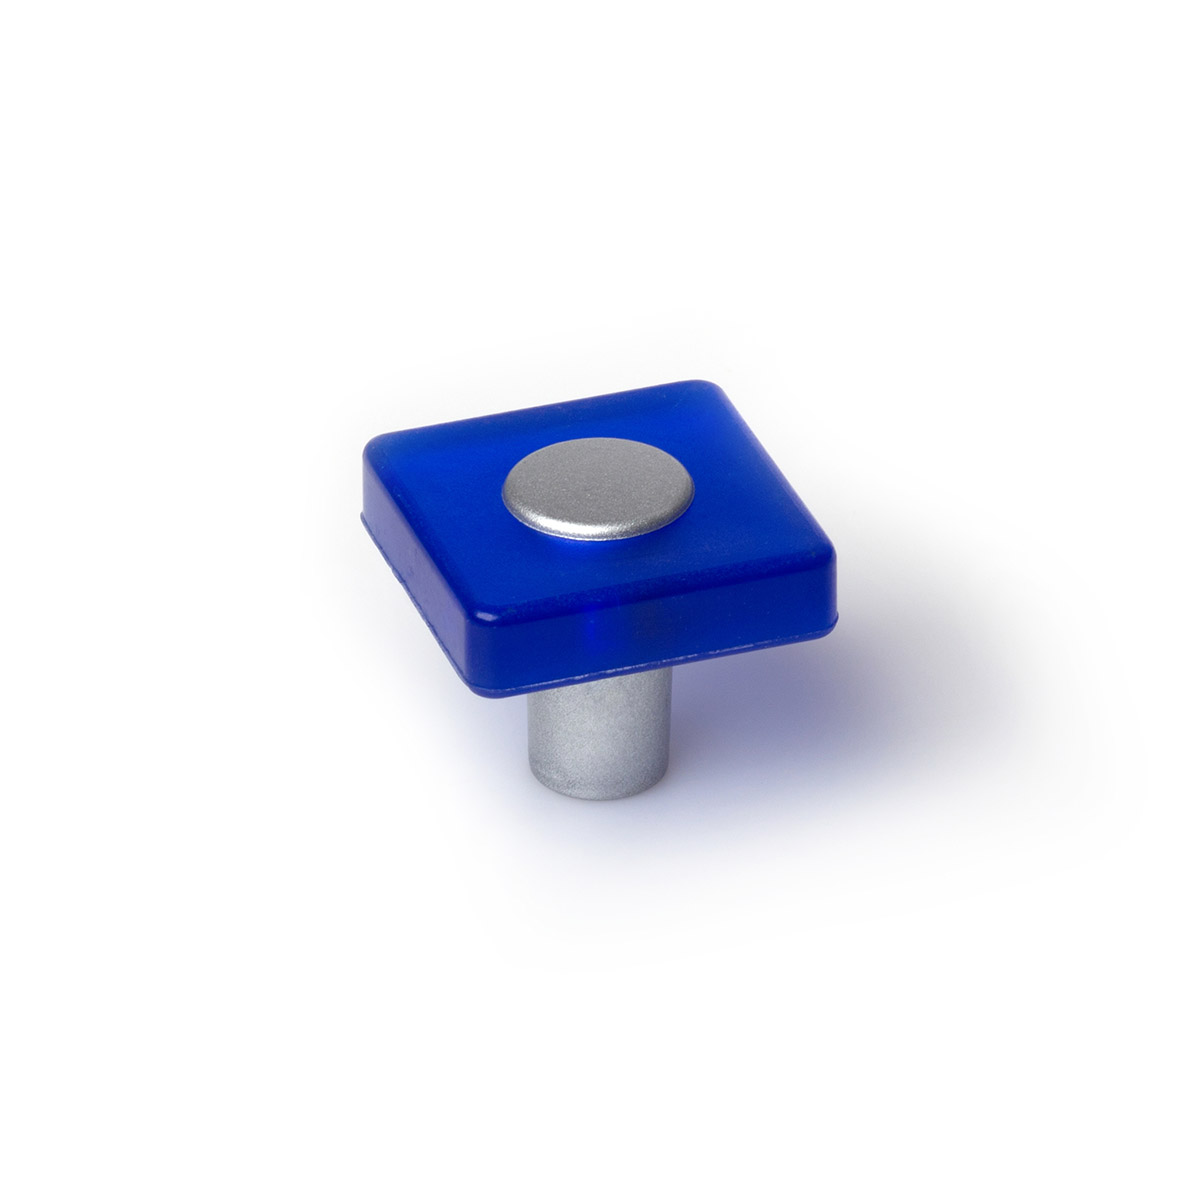 Pomo de plástico con acabado azul, dimensiones: 30x30x26mm